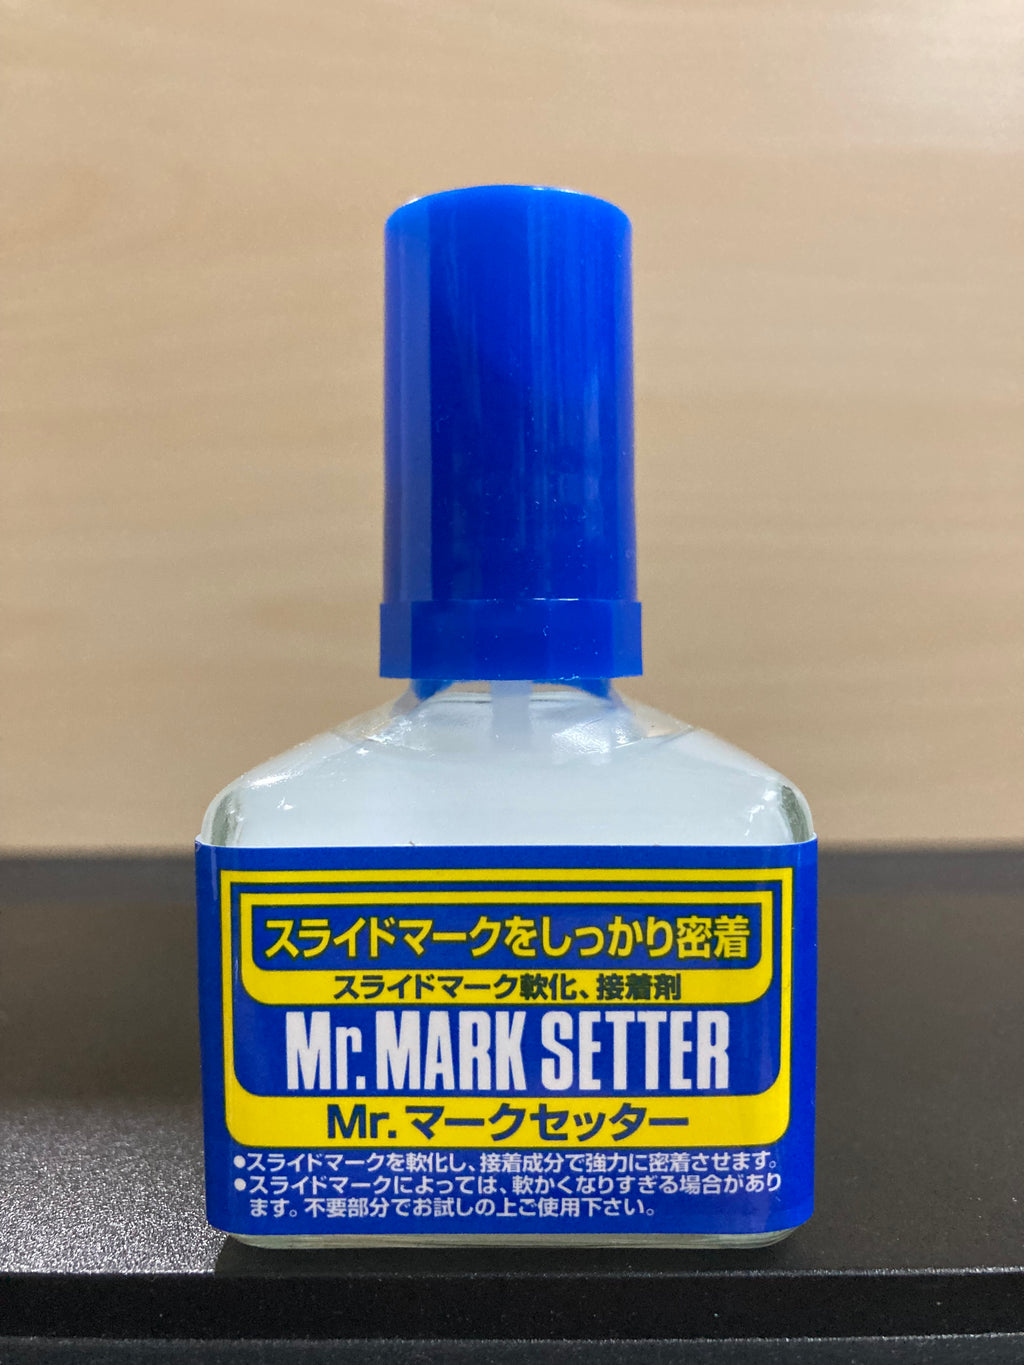 PAKET Mr Mark Softer DAN Mr Mark Setter